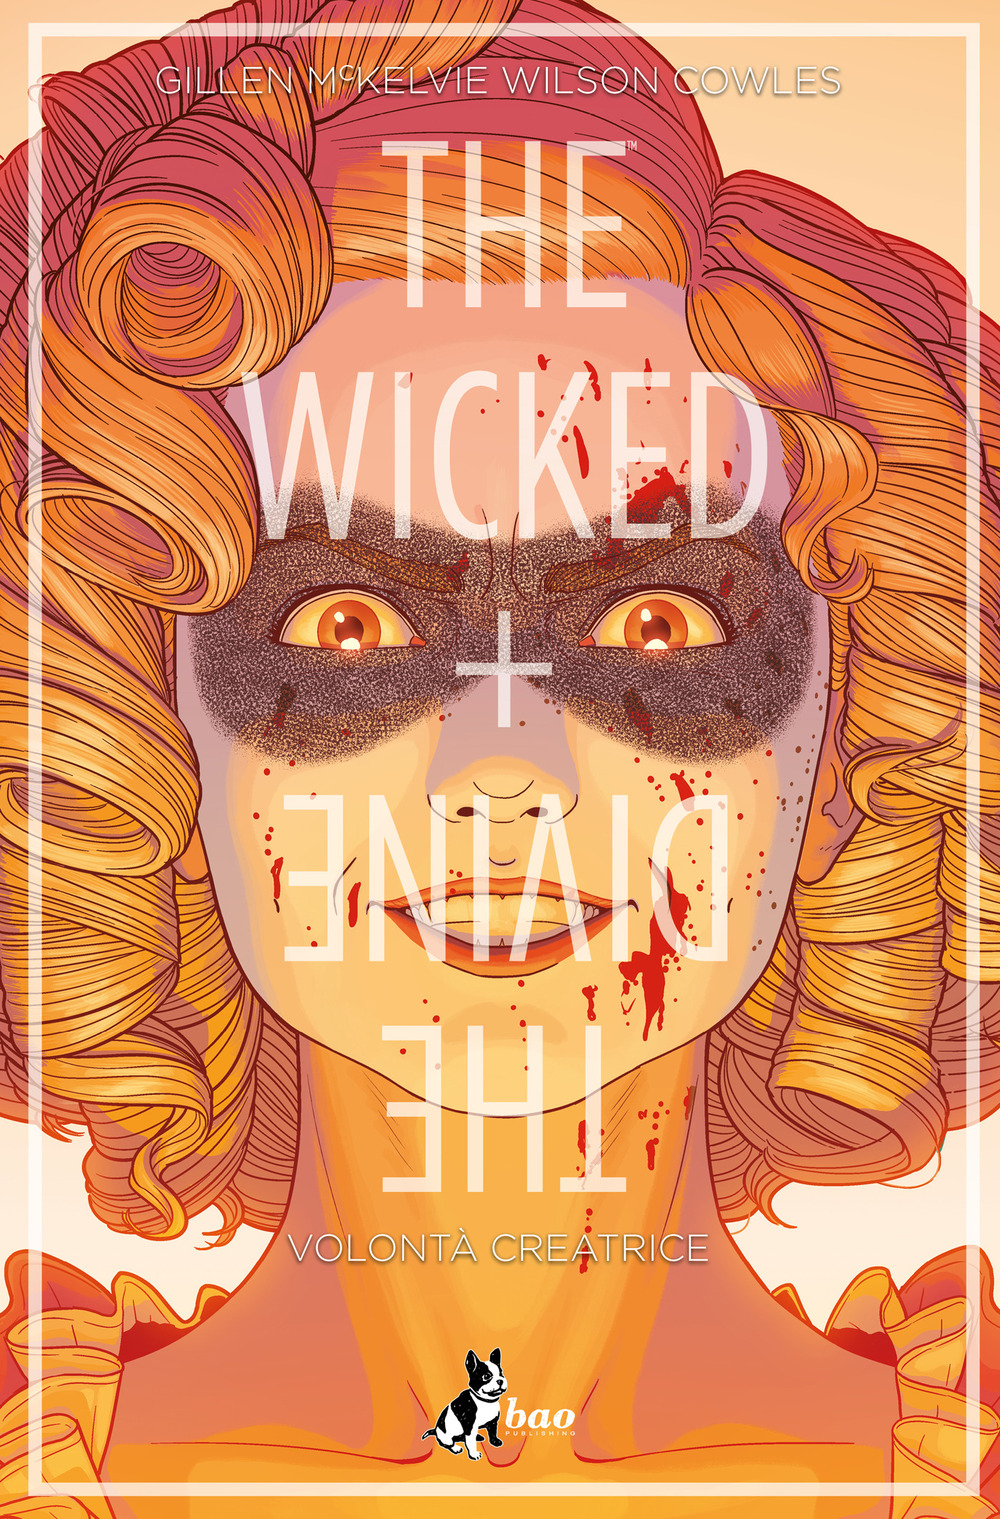 The wicked + The divine. Vol. 7: Volontà creatrice